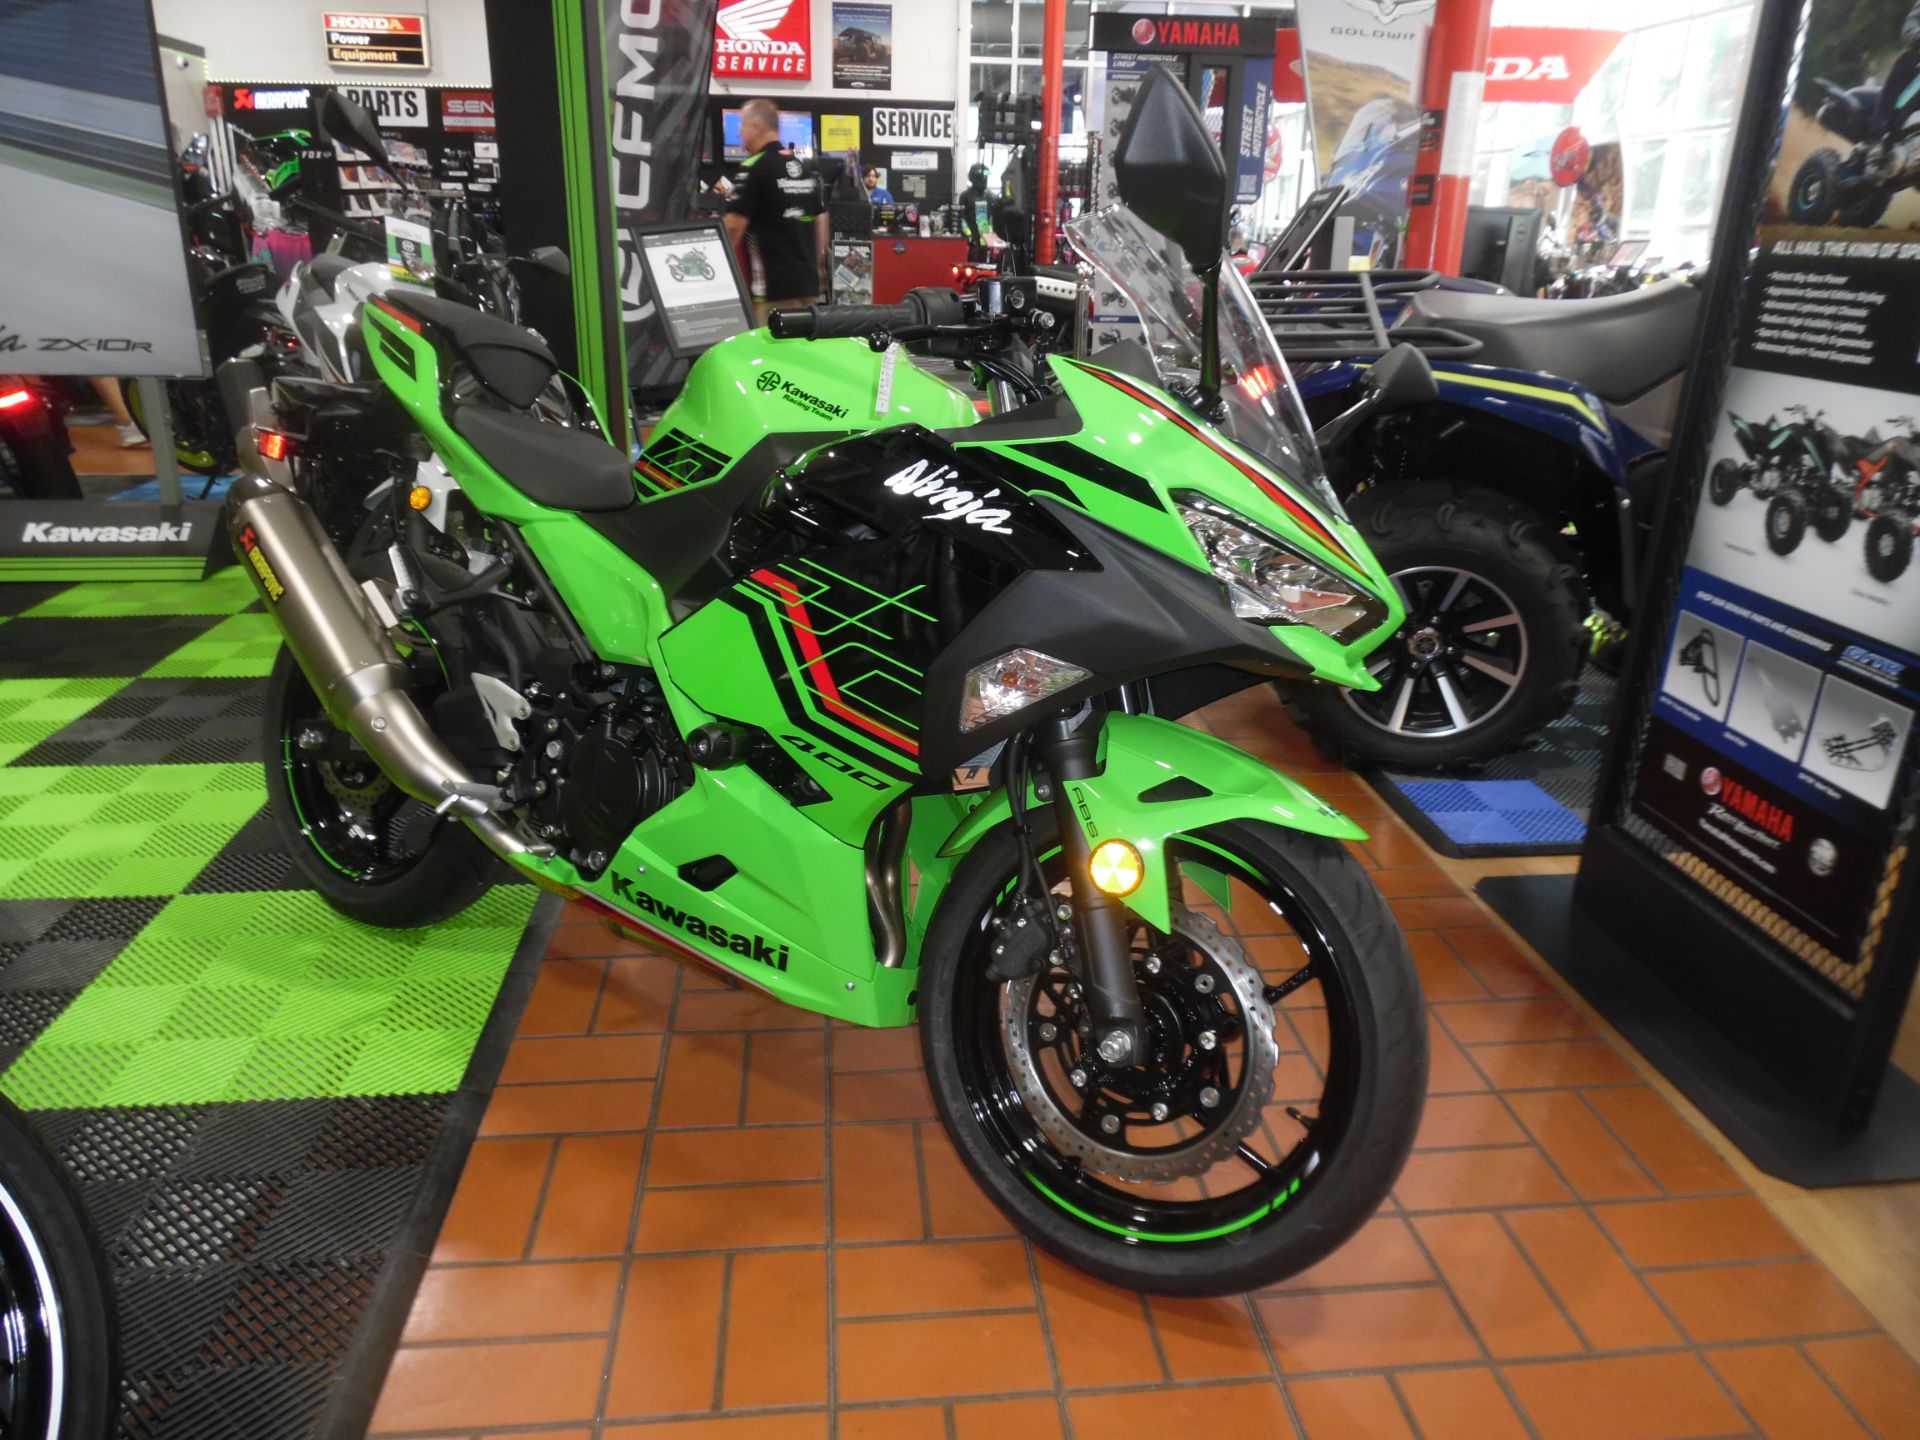 2023 Kawasaki Ninja 400 ABS KRT Edition in Wake Forest, North Carolina - Photo 1